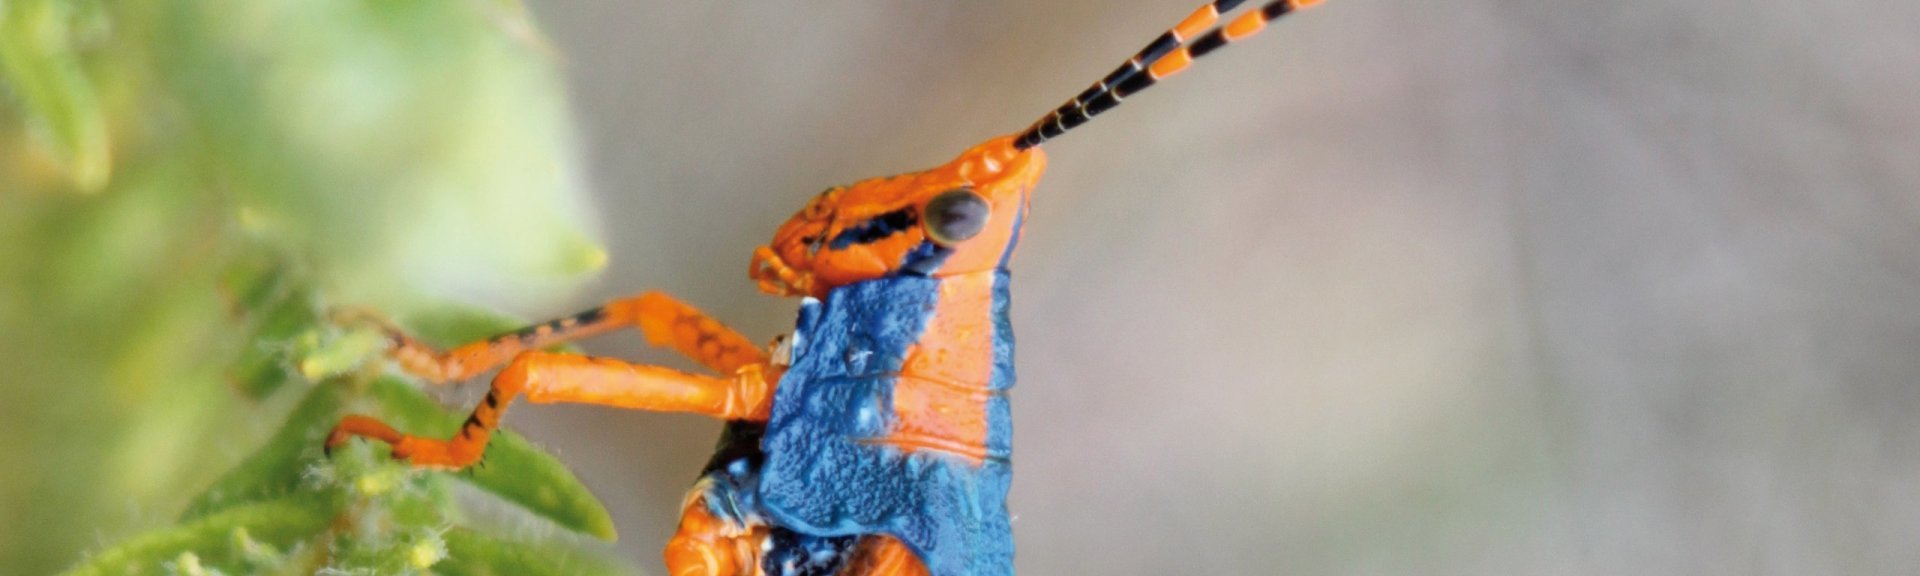 Leichhardt's grasshopper